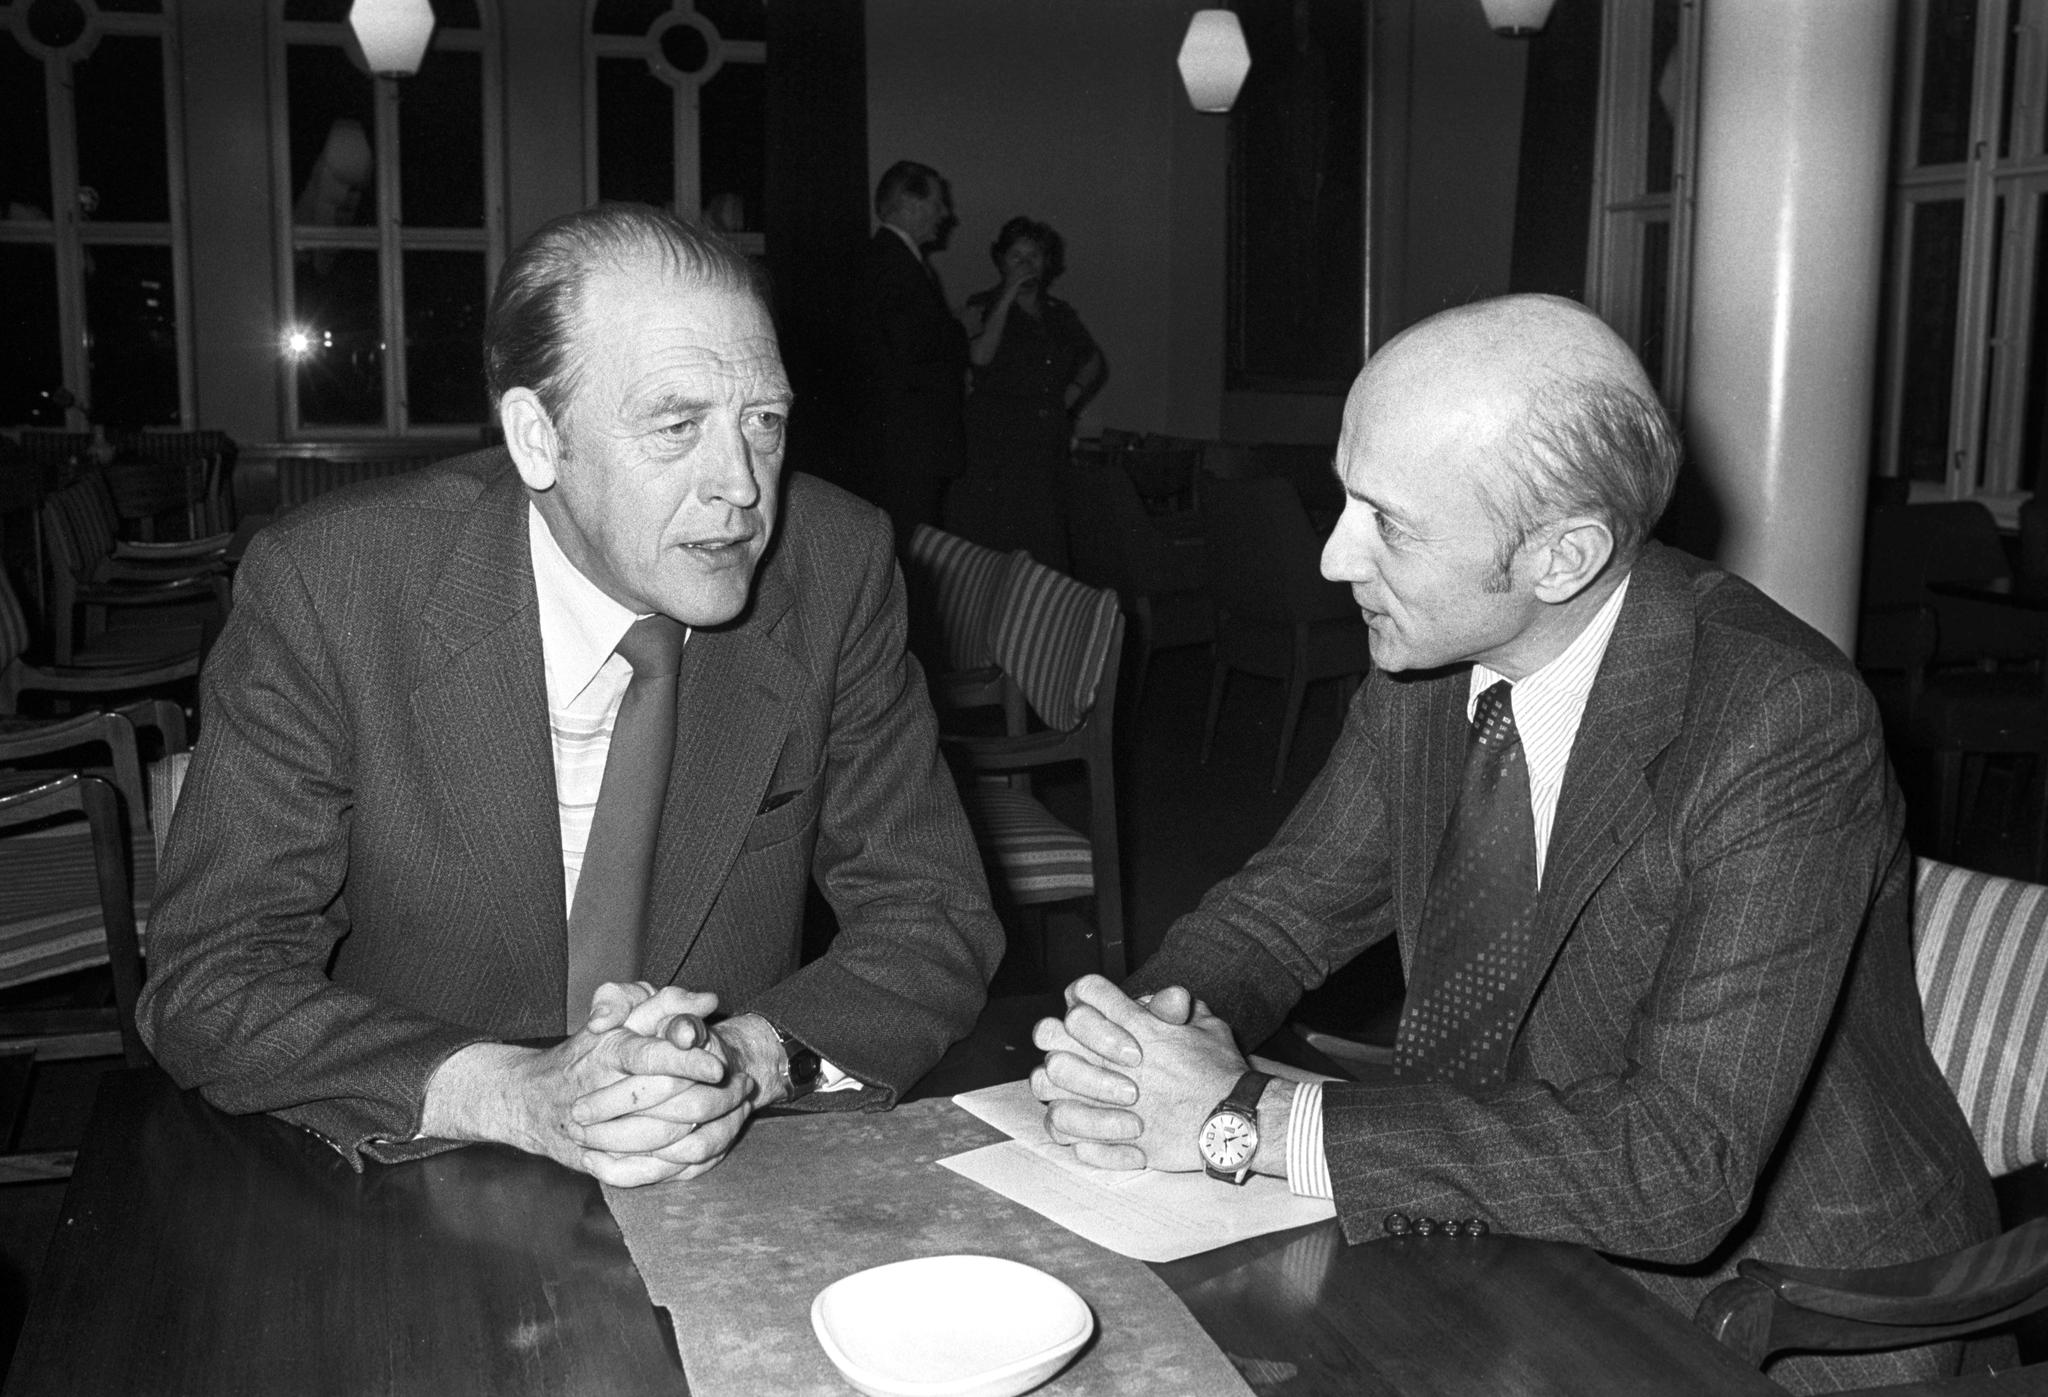  Finansdebatten i 1978 ble avsluttet med votering i Stortinget. Her slapper statsminister Odvar Nordli (Ap) (t.v.) og Høyres parlamentariske leder Kåre Willoch av etter debatten.  